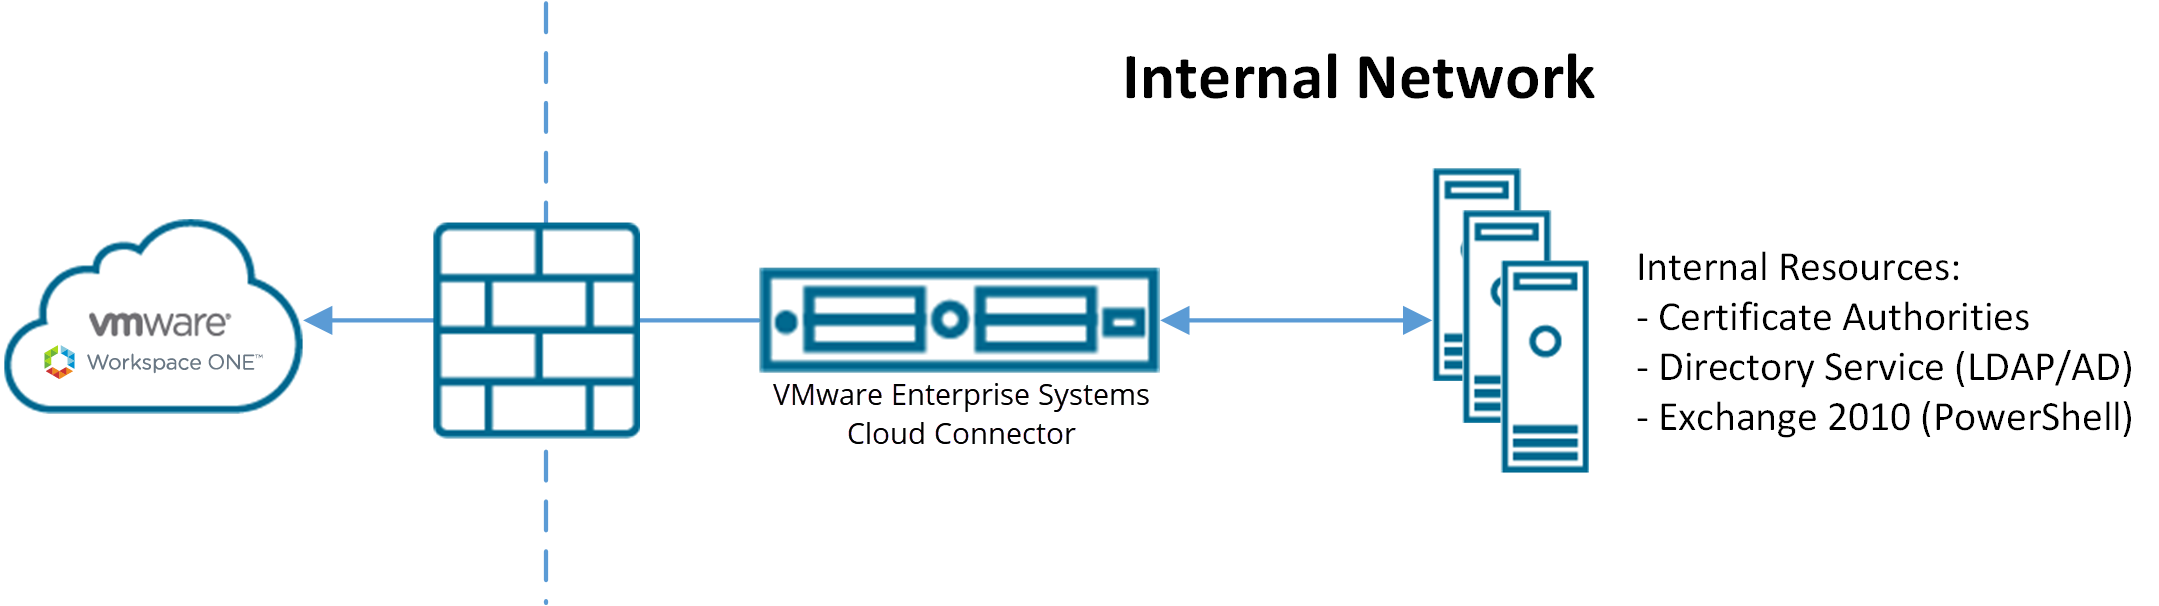 Dit diagram laat zien hoe de VMware cloud connector via de firewall verbinding maakt met Workspace ONE in de cloud en tegelijk toegang heeft tot interne netwerkbronnen.